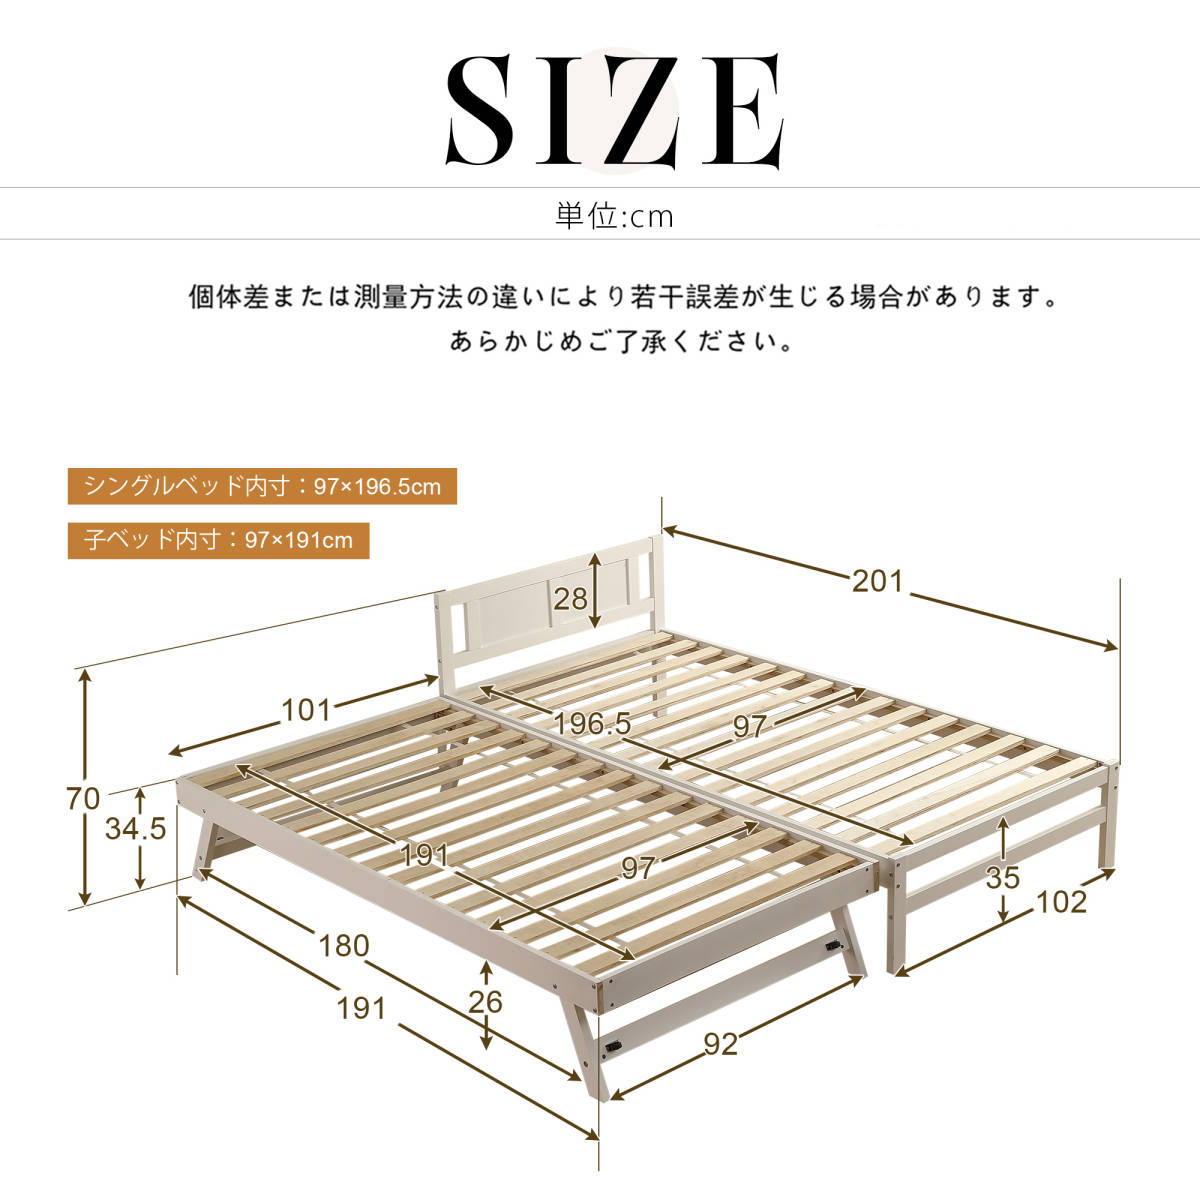 [ новый продукт ][ белый ] родители . bed двухъярусная кровать дерево bed одиночная кровать ti bed extra bed место хранения Северная Европа способ модный 